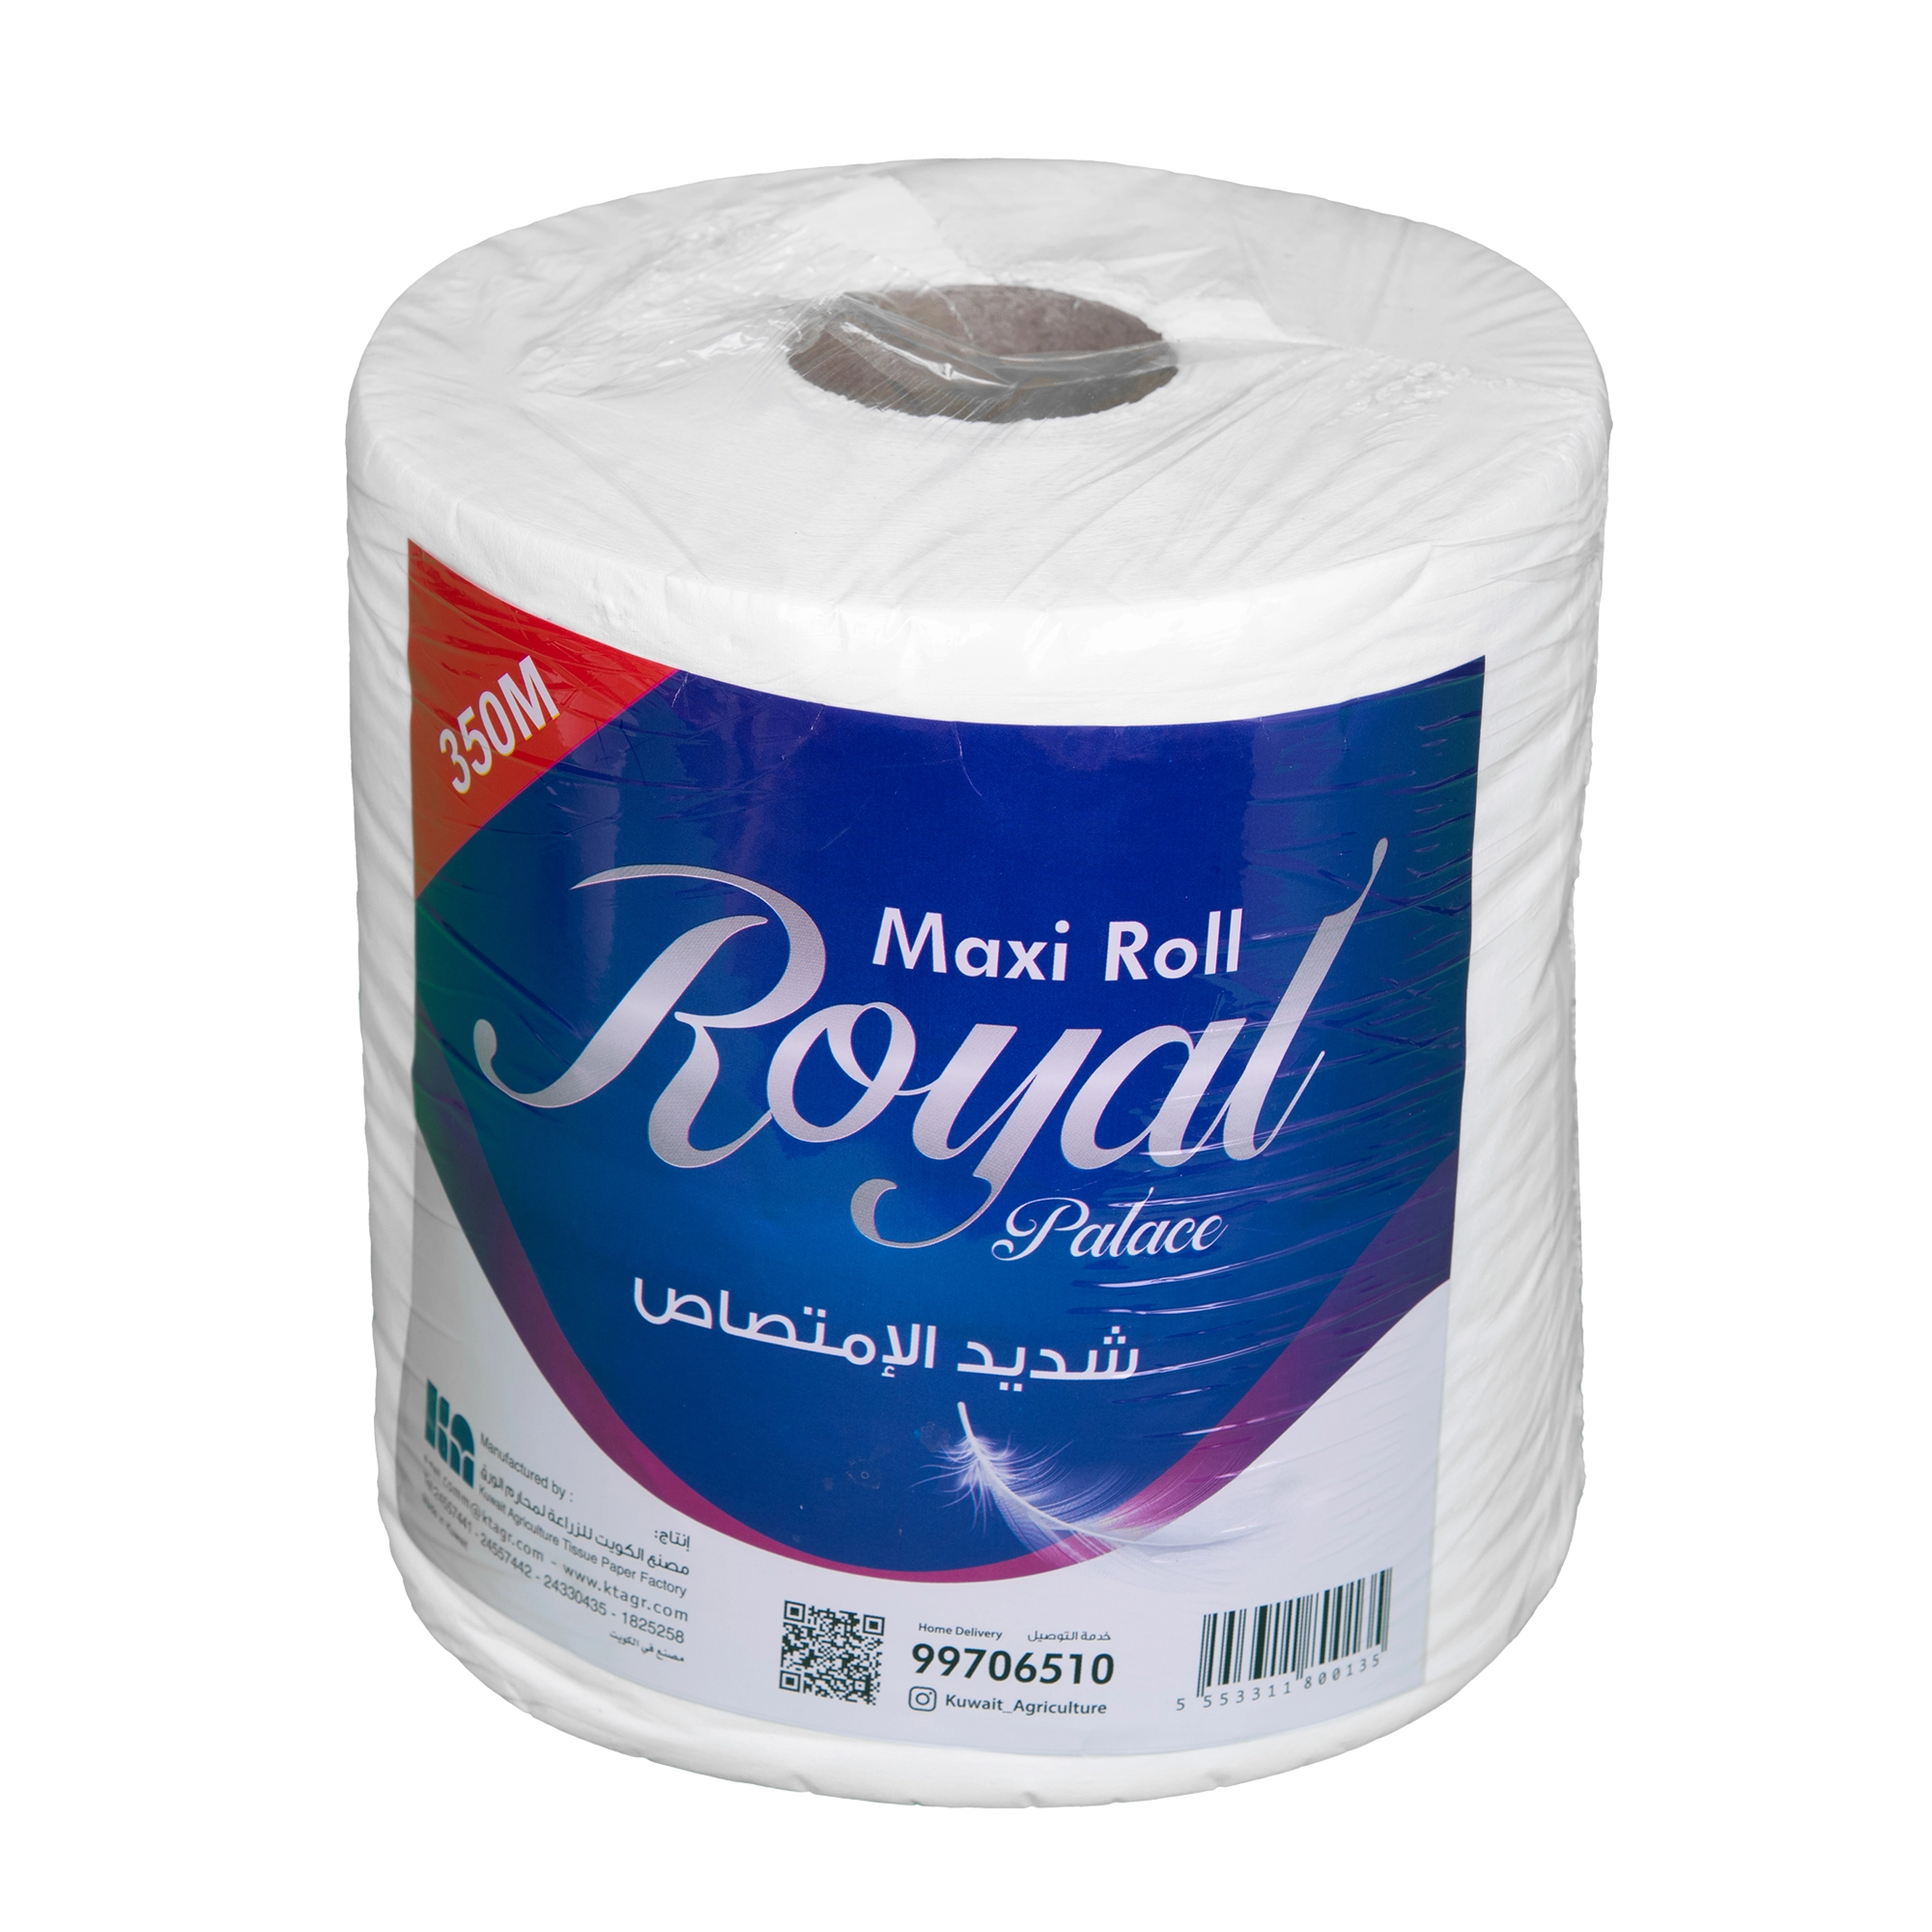 KAC - Royal Maxi Roll 350 mtr